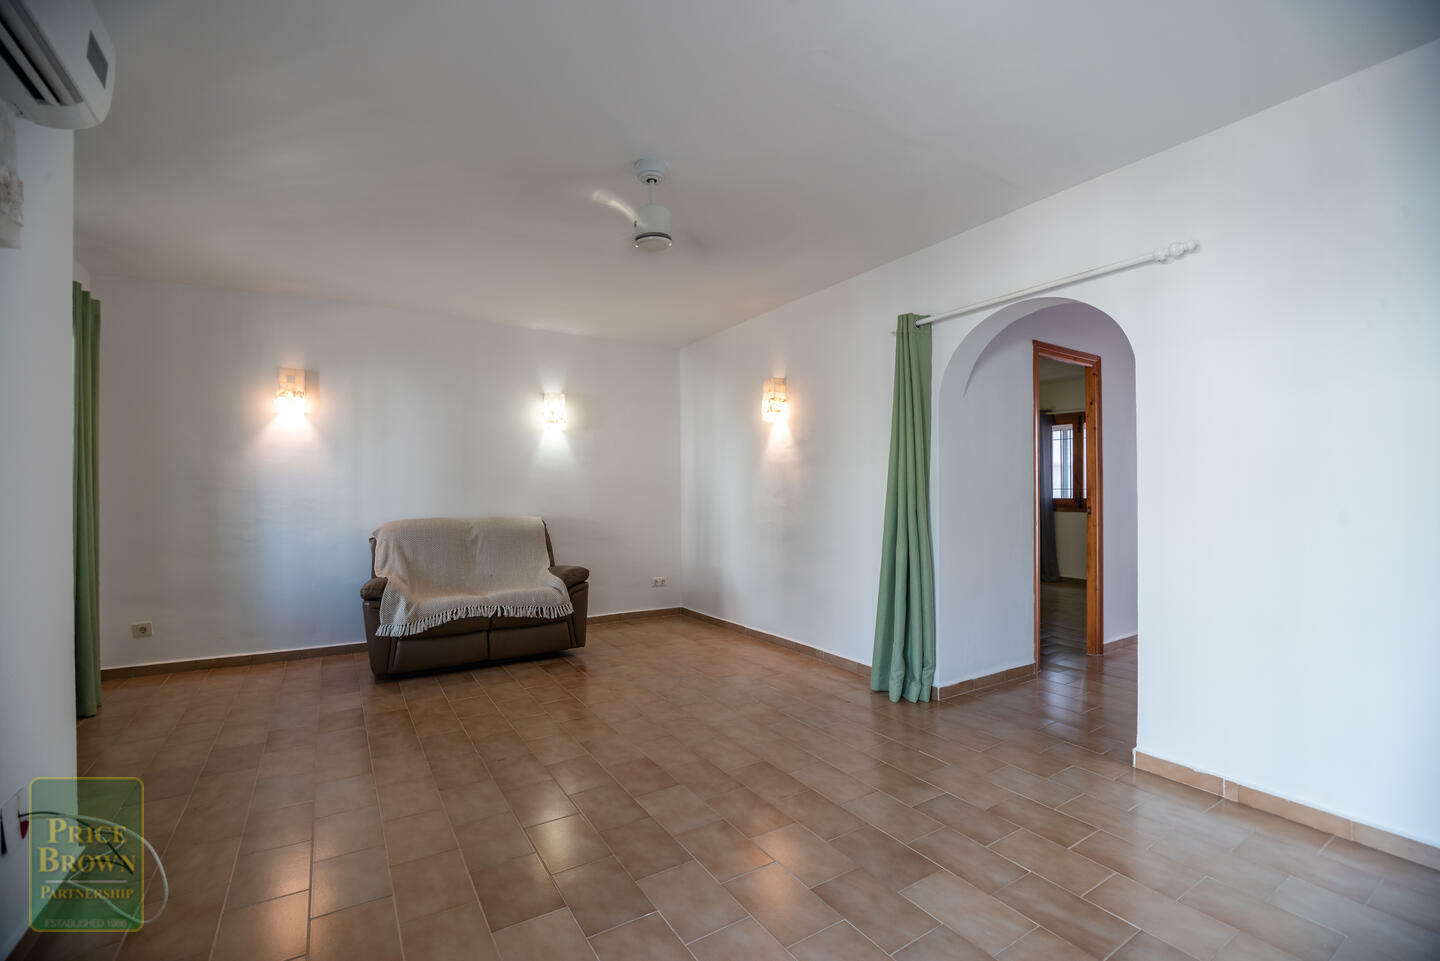 A1428: 2 Bedroom Apartment for Sale in Mojácar, Almería ...